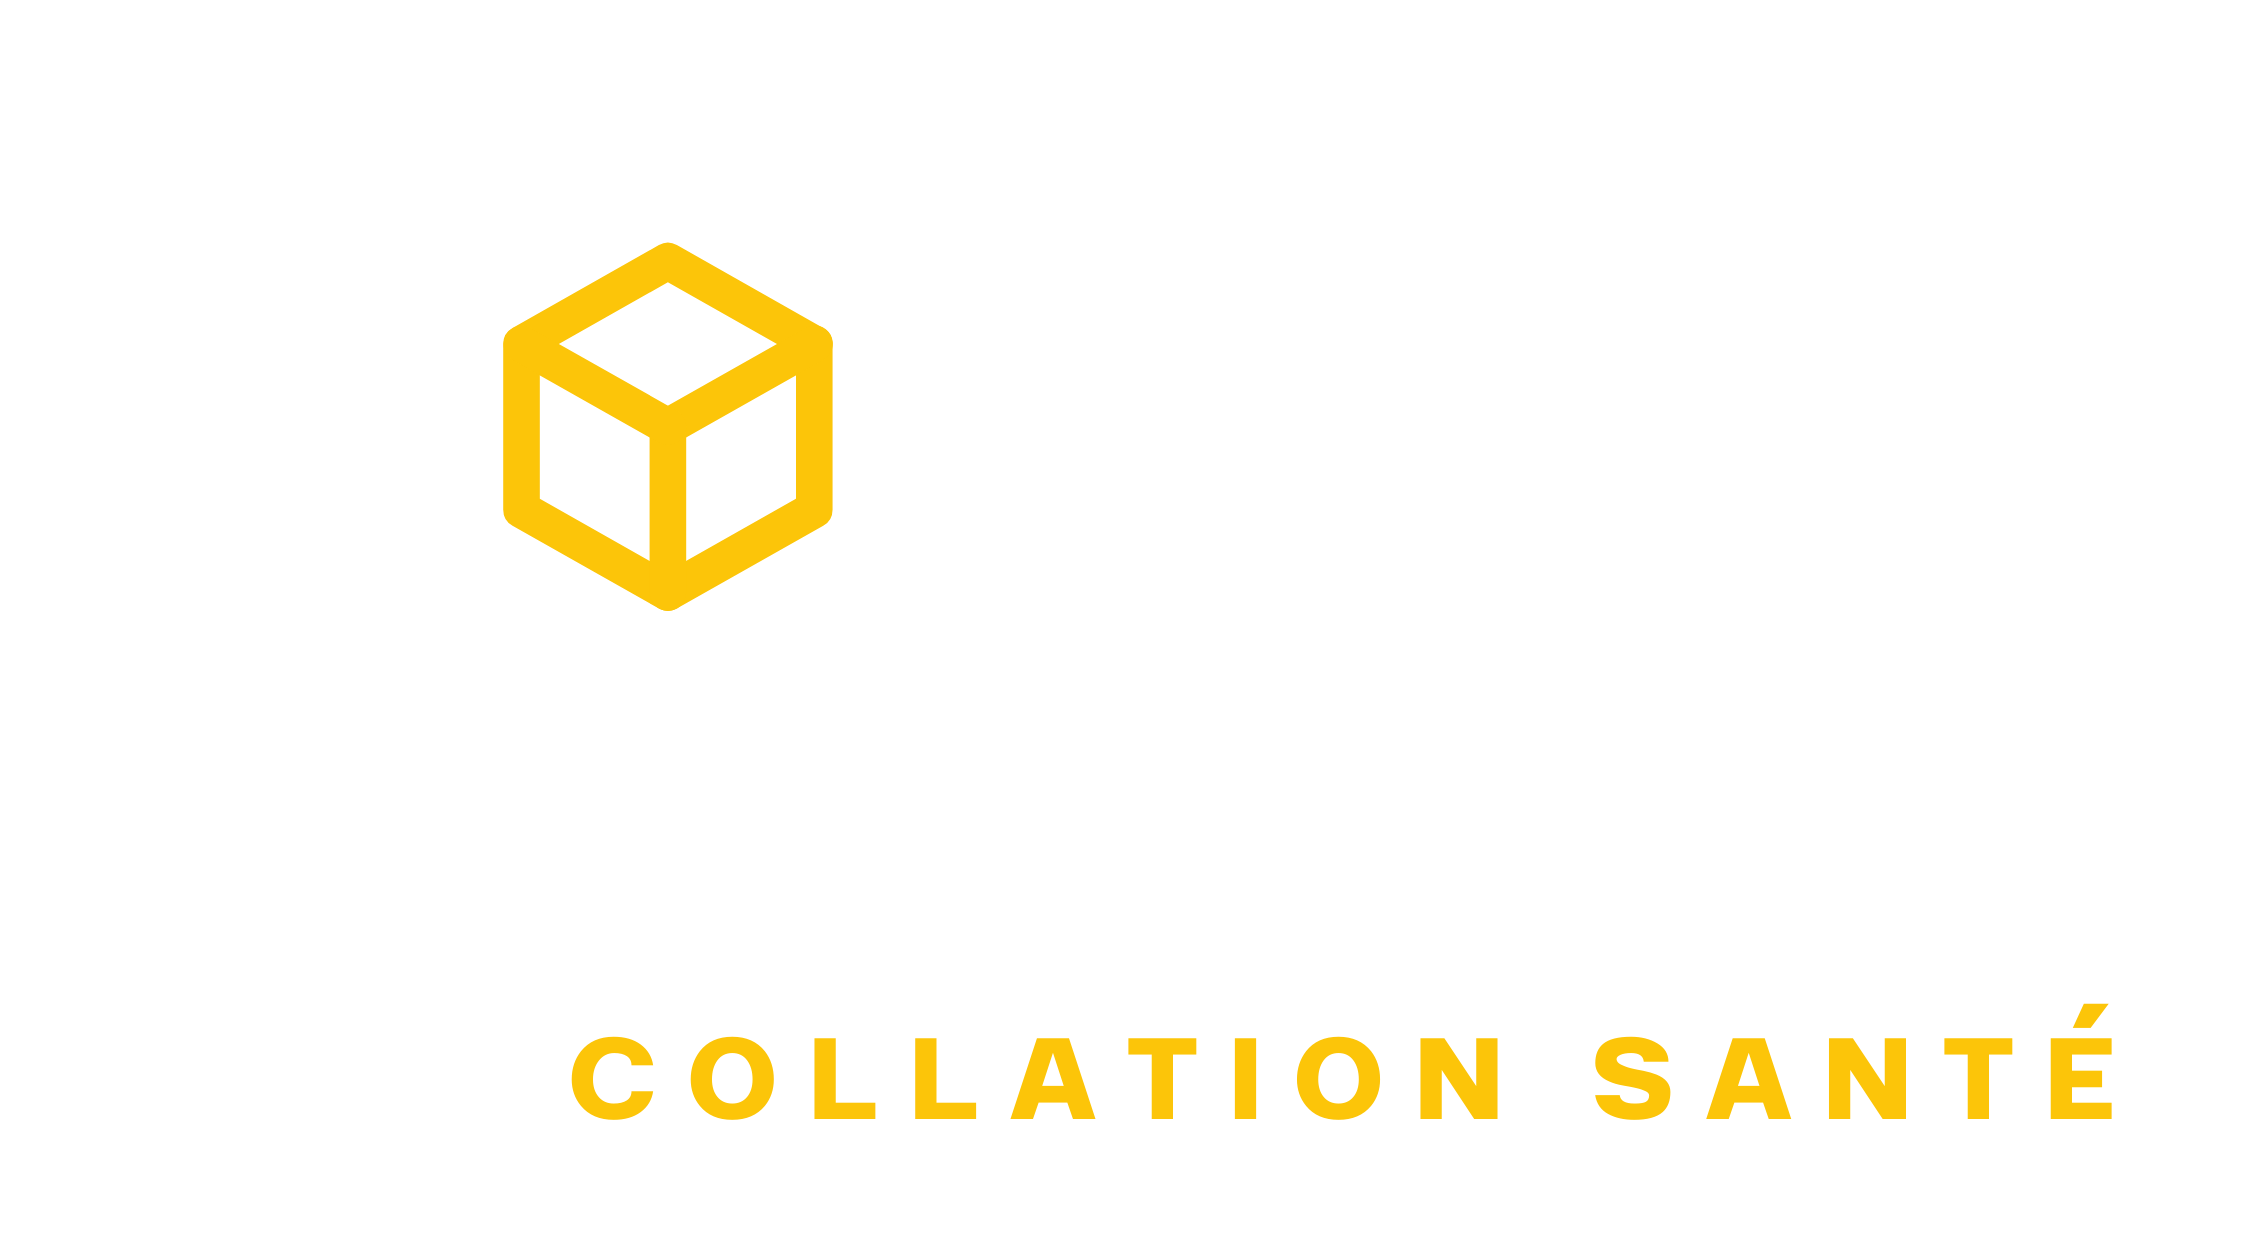 Boxboutik collation santé